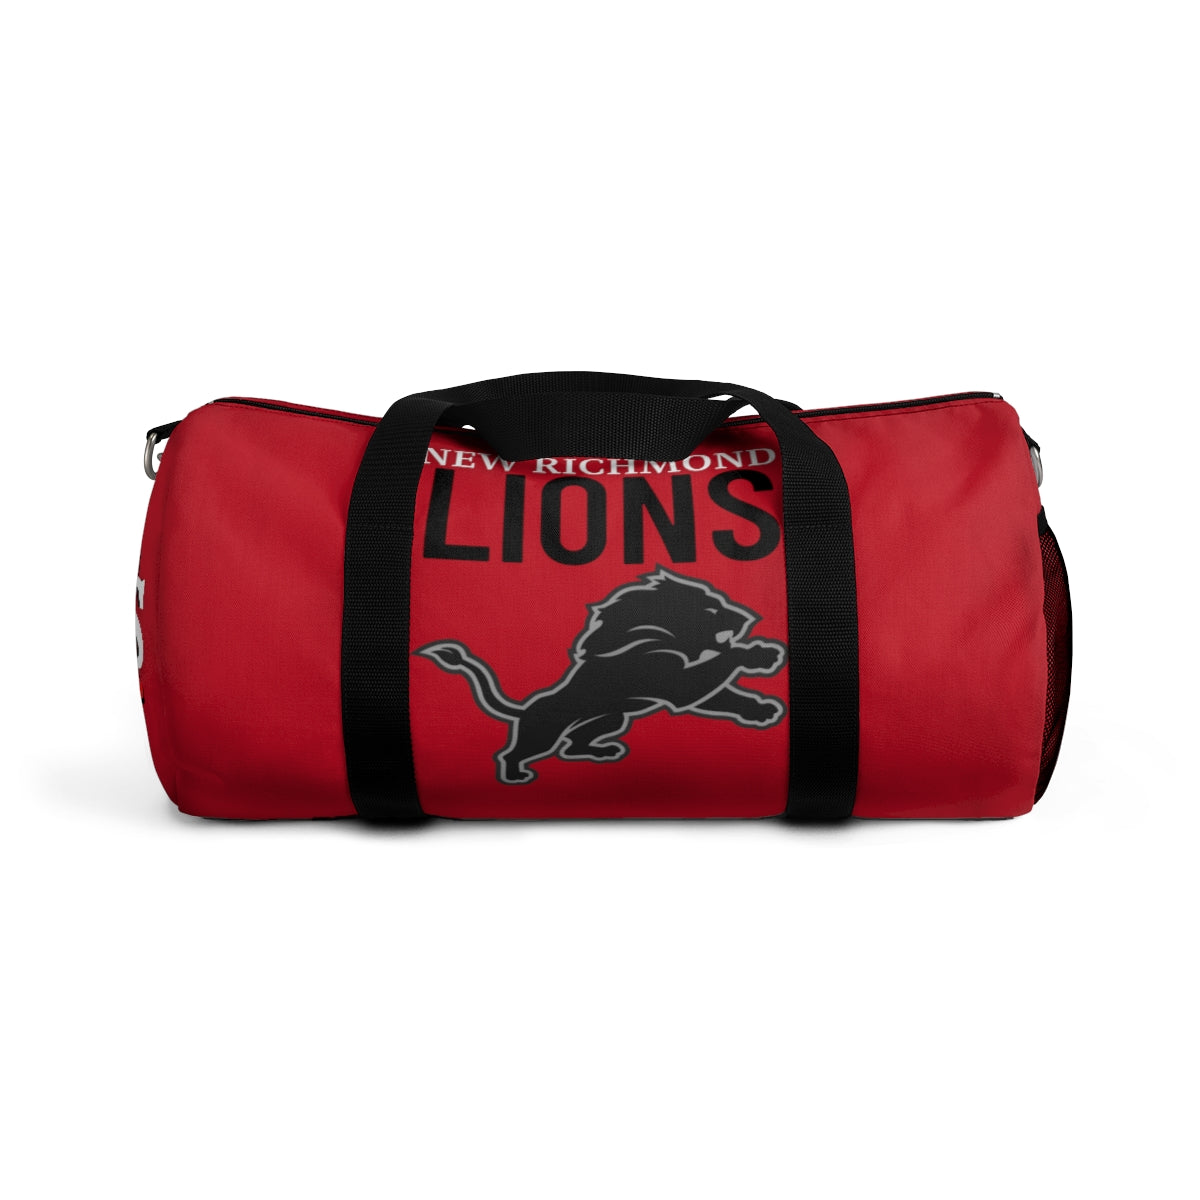 Lions Duffel Bag